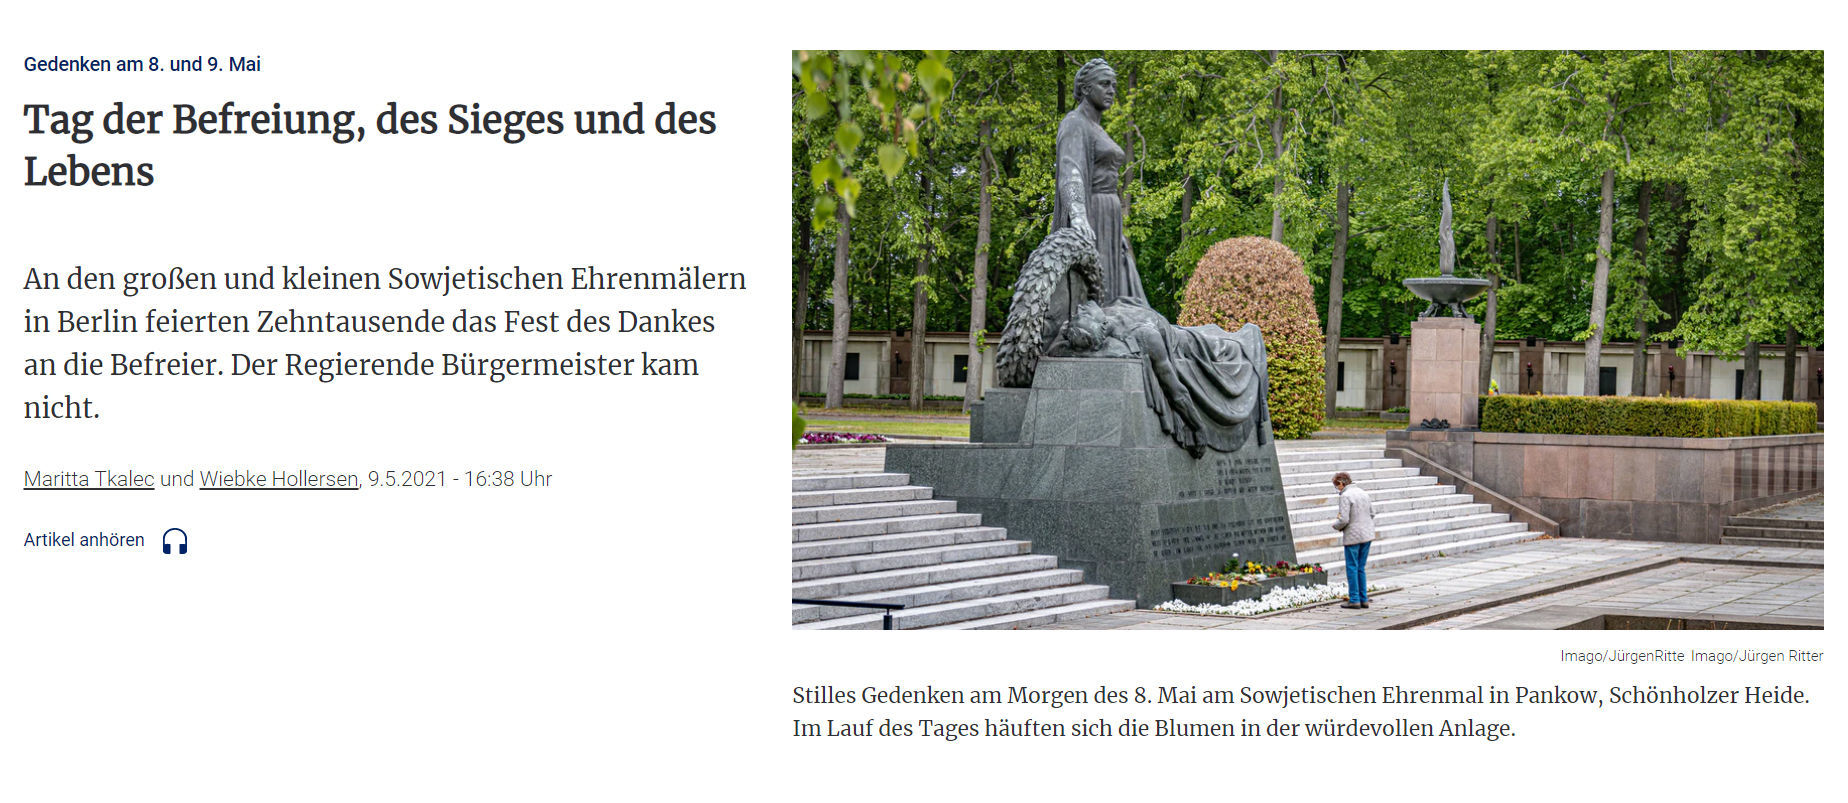 Скриншот статьи немецкой газеты Berliner Zeitung о праздновании Дня Победы в Германии